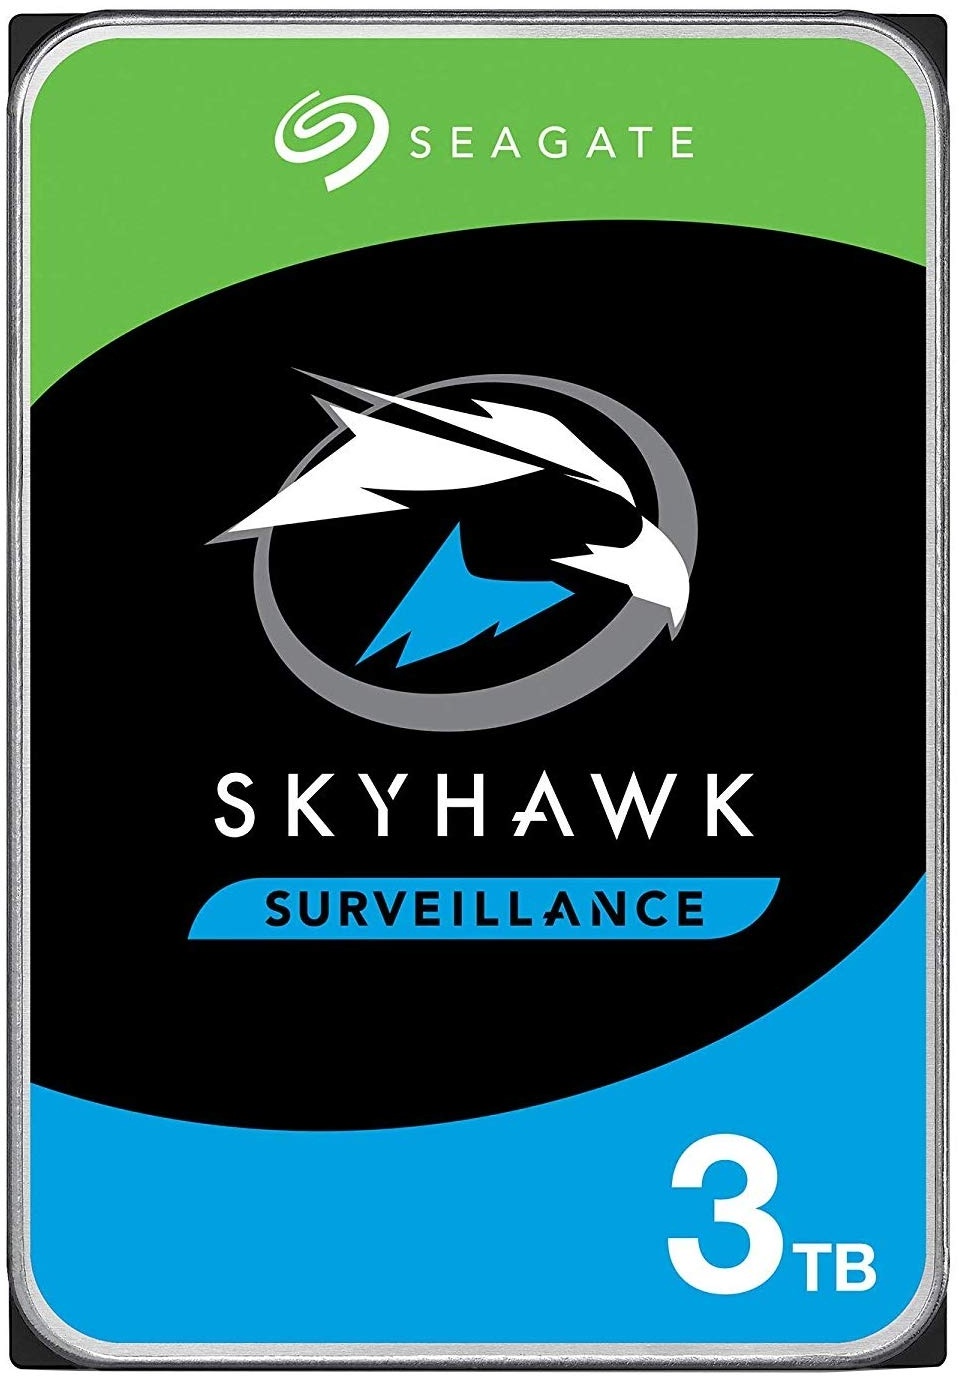 Seagate SkyHawk 3TB interne Festplatte HDD, für Videoaufnahme mit bis zu 64 Kameras, 3.5 Zoll, 64 MB Cache, SATA 6GB/s, silber, inkl. 3 Jahre Rescue Service, Modellnr.: ST3000VX009